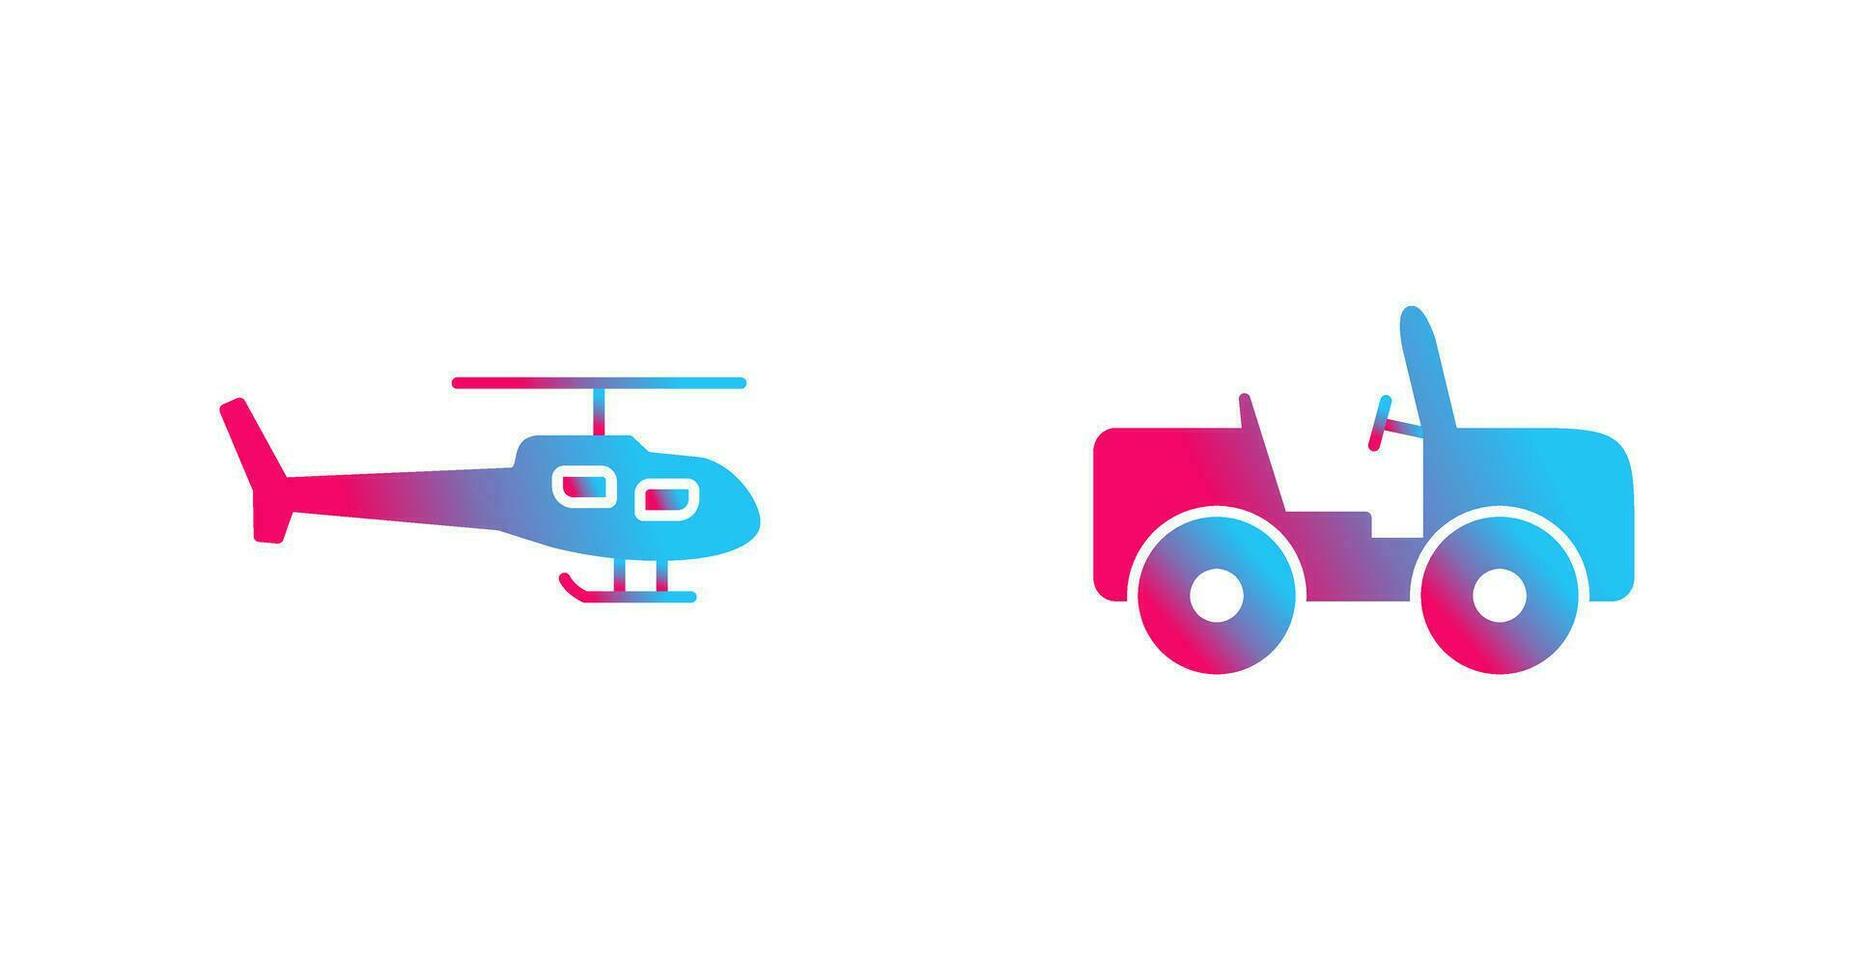 helicóptero y safari icono vector